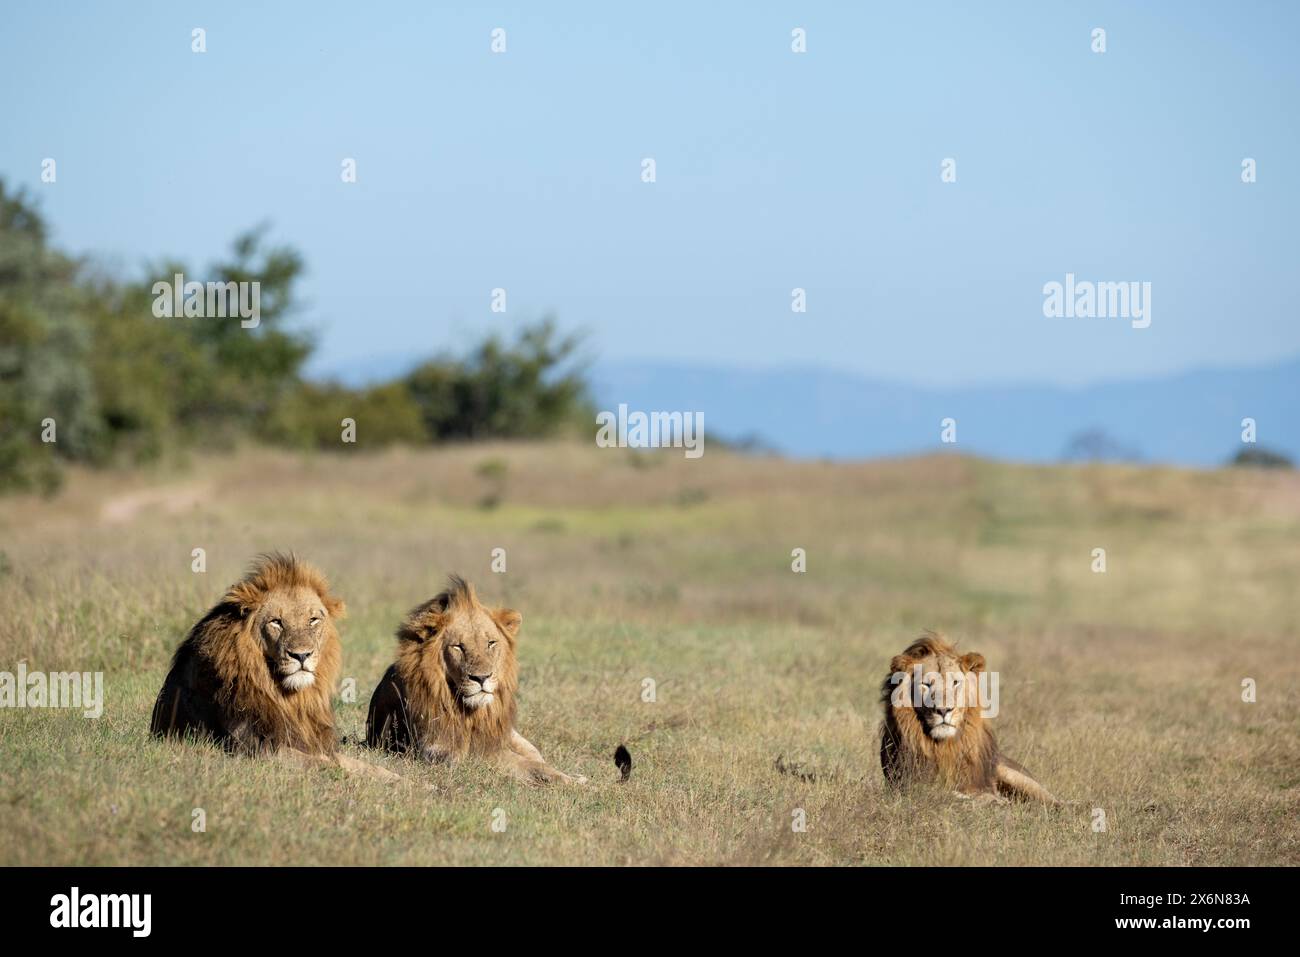 Vue panoramique d'une fierté de trois lions mâles adultes (Panthera leo) couchés dans un espace ouvert Banque D'Images